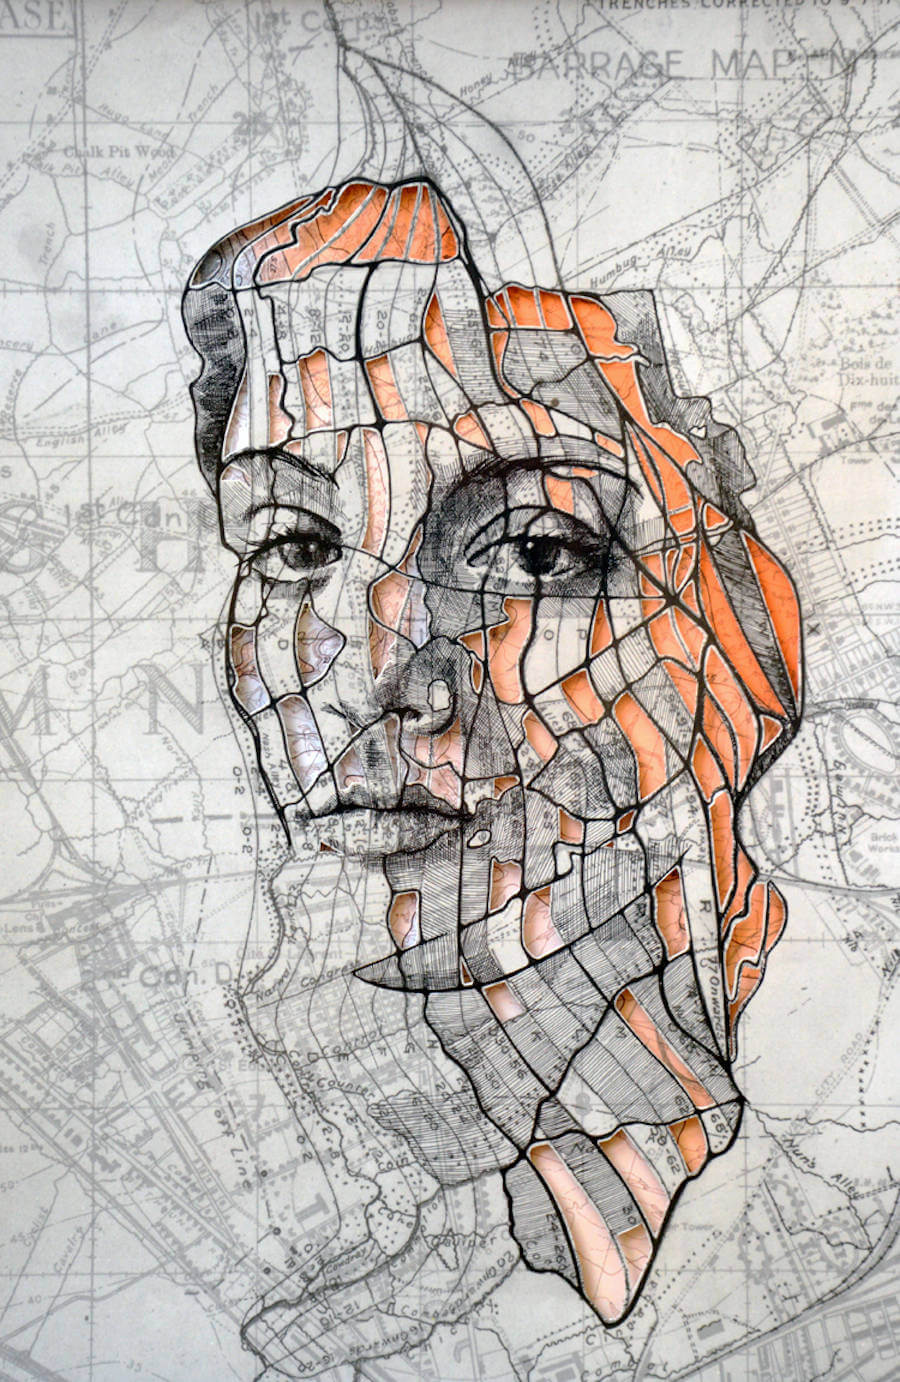 Portraits Drawn on Maps by Ed Fairburn (9)